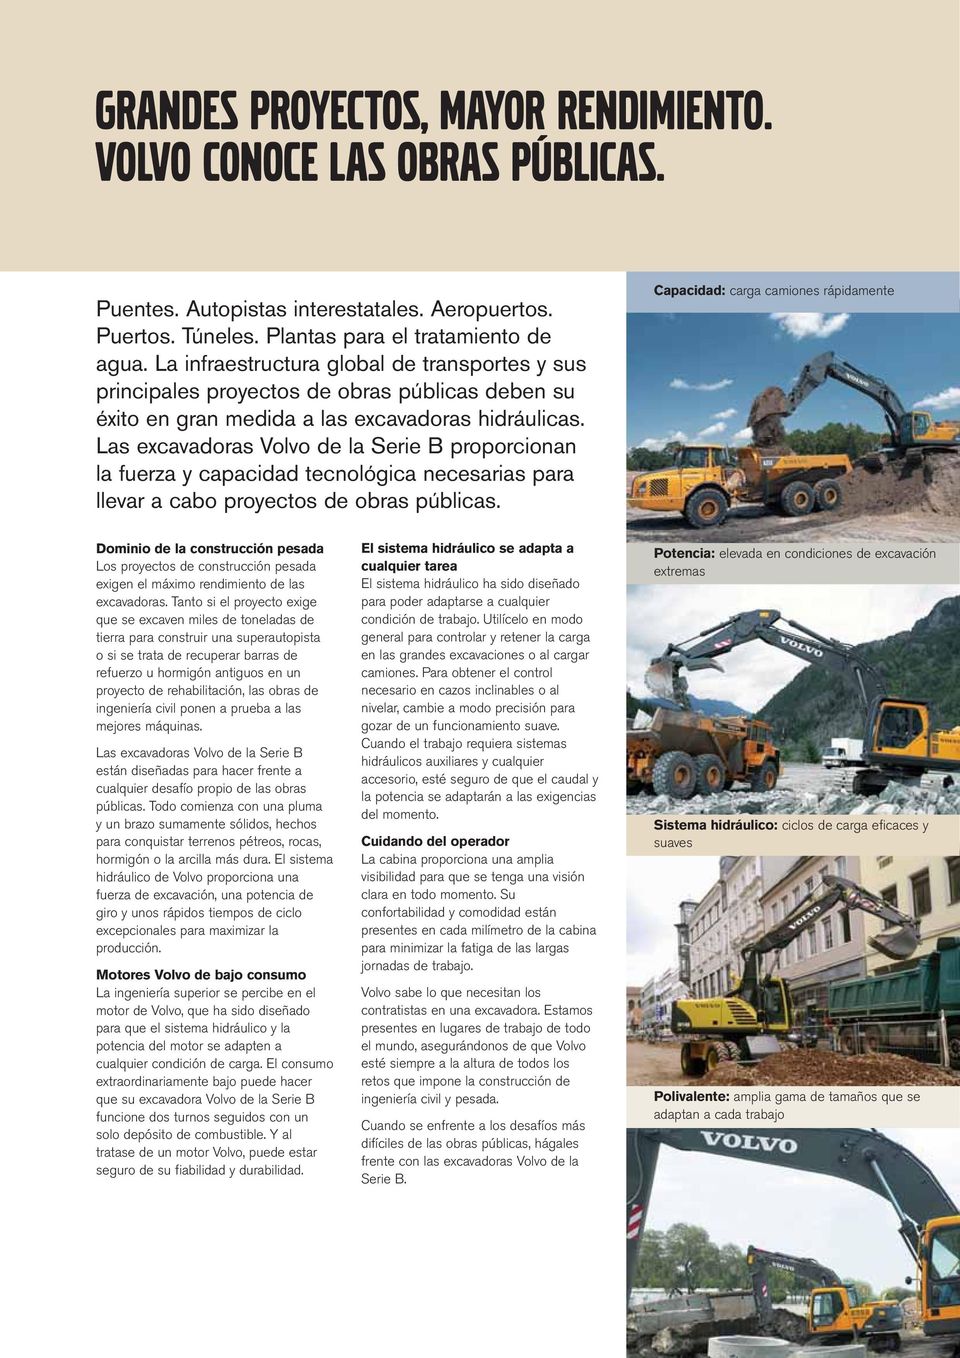 Las excavadoras Volvo de la Serie B proporcionan la fuerza y capacidad tecnológica necesarias para llevar a cabo proyectos de obras públicas.